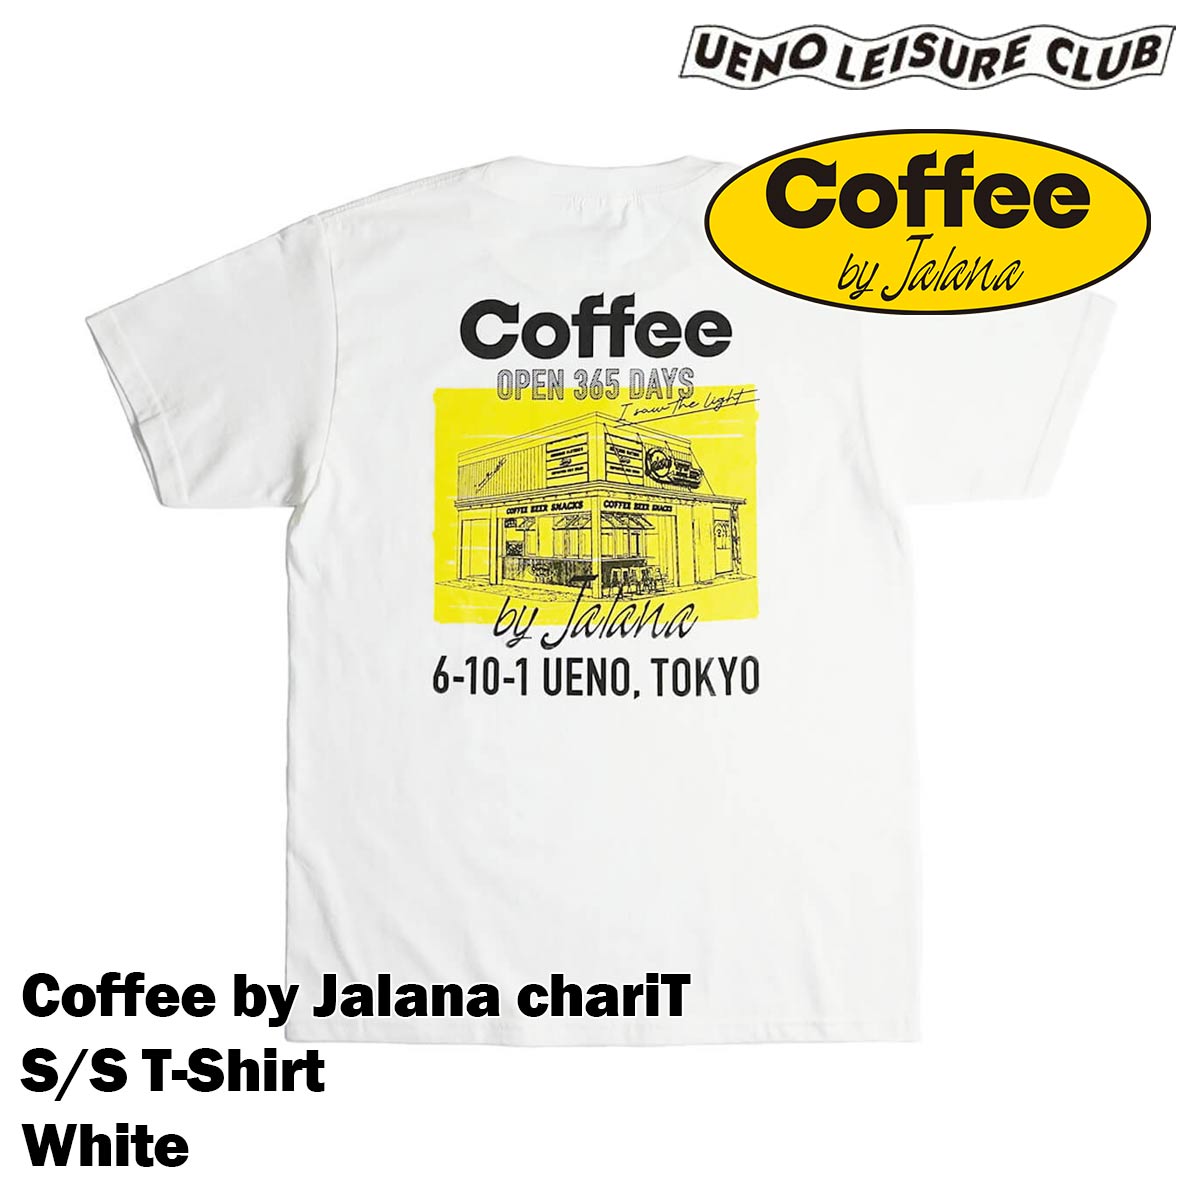 ウエノレジャークラブ UENO LEISURE CLUB Coffee by Jalana char...